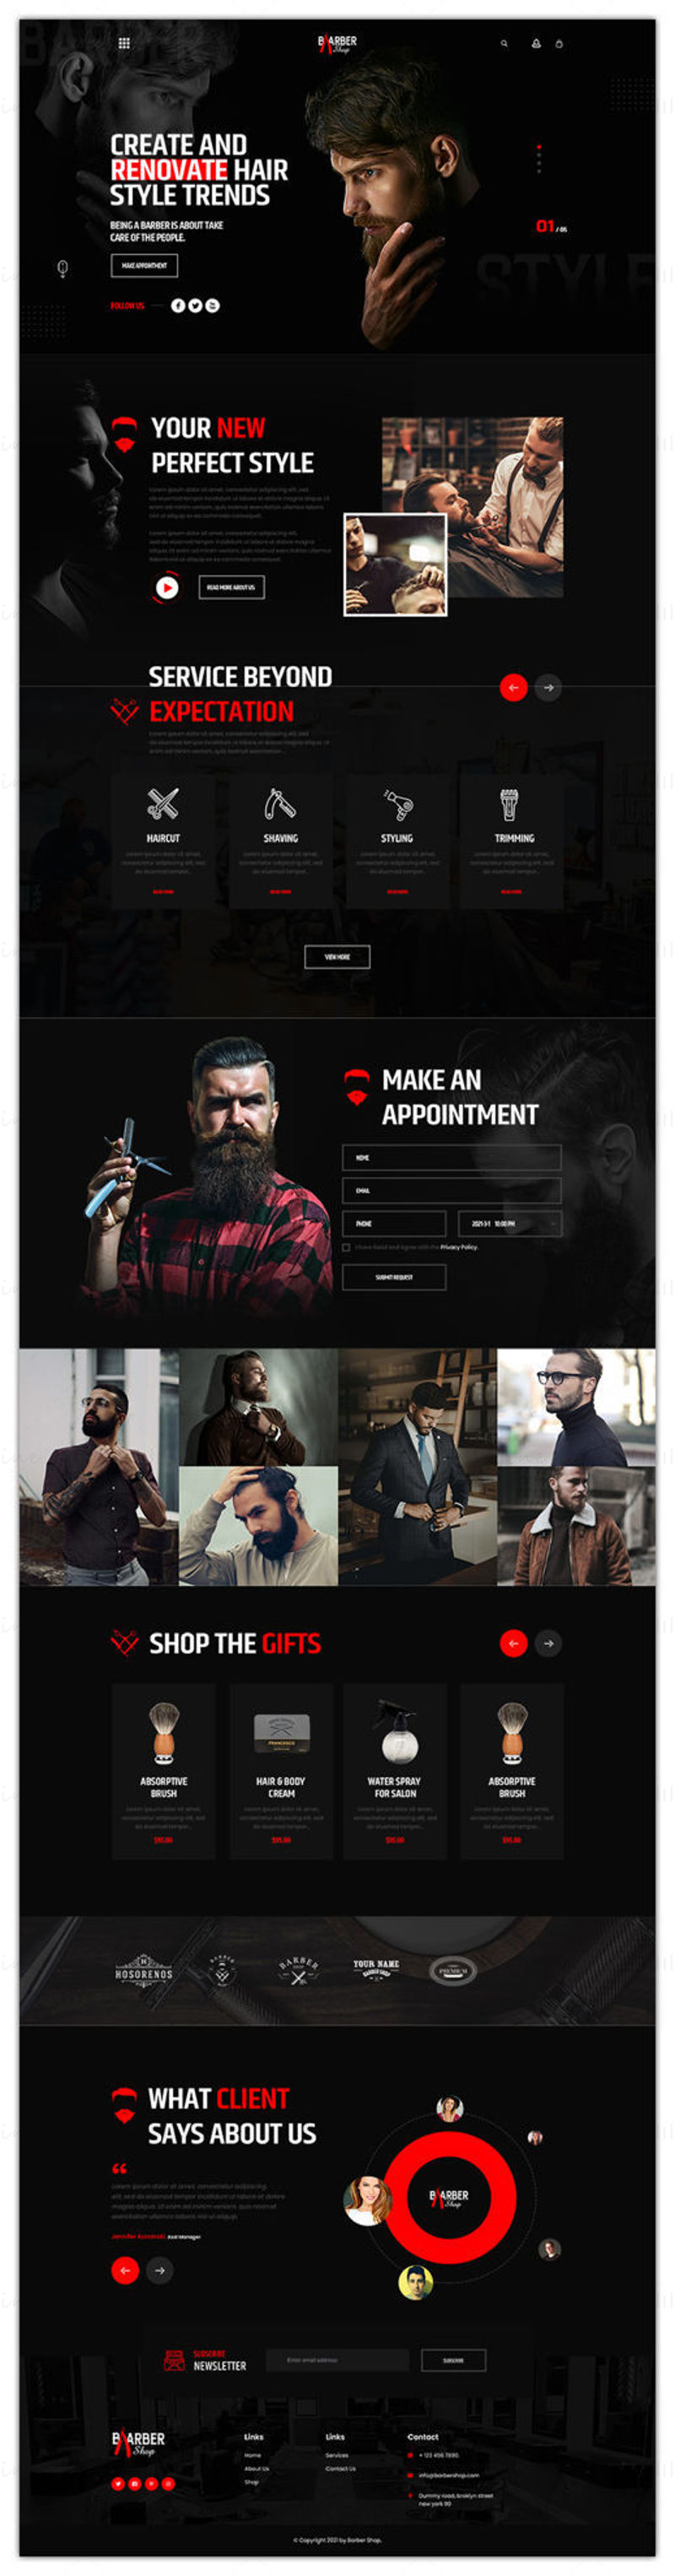 Interfaz de usuario del sitio web de peluquerías y peluquerías Adobe Photoshop PSD